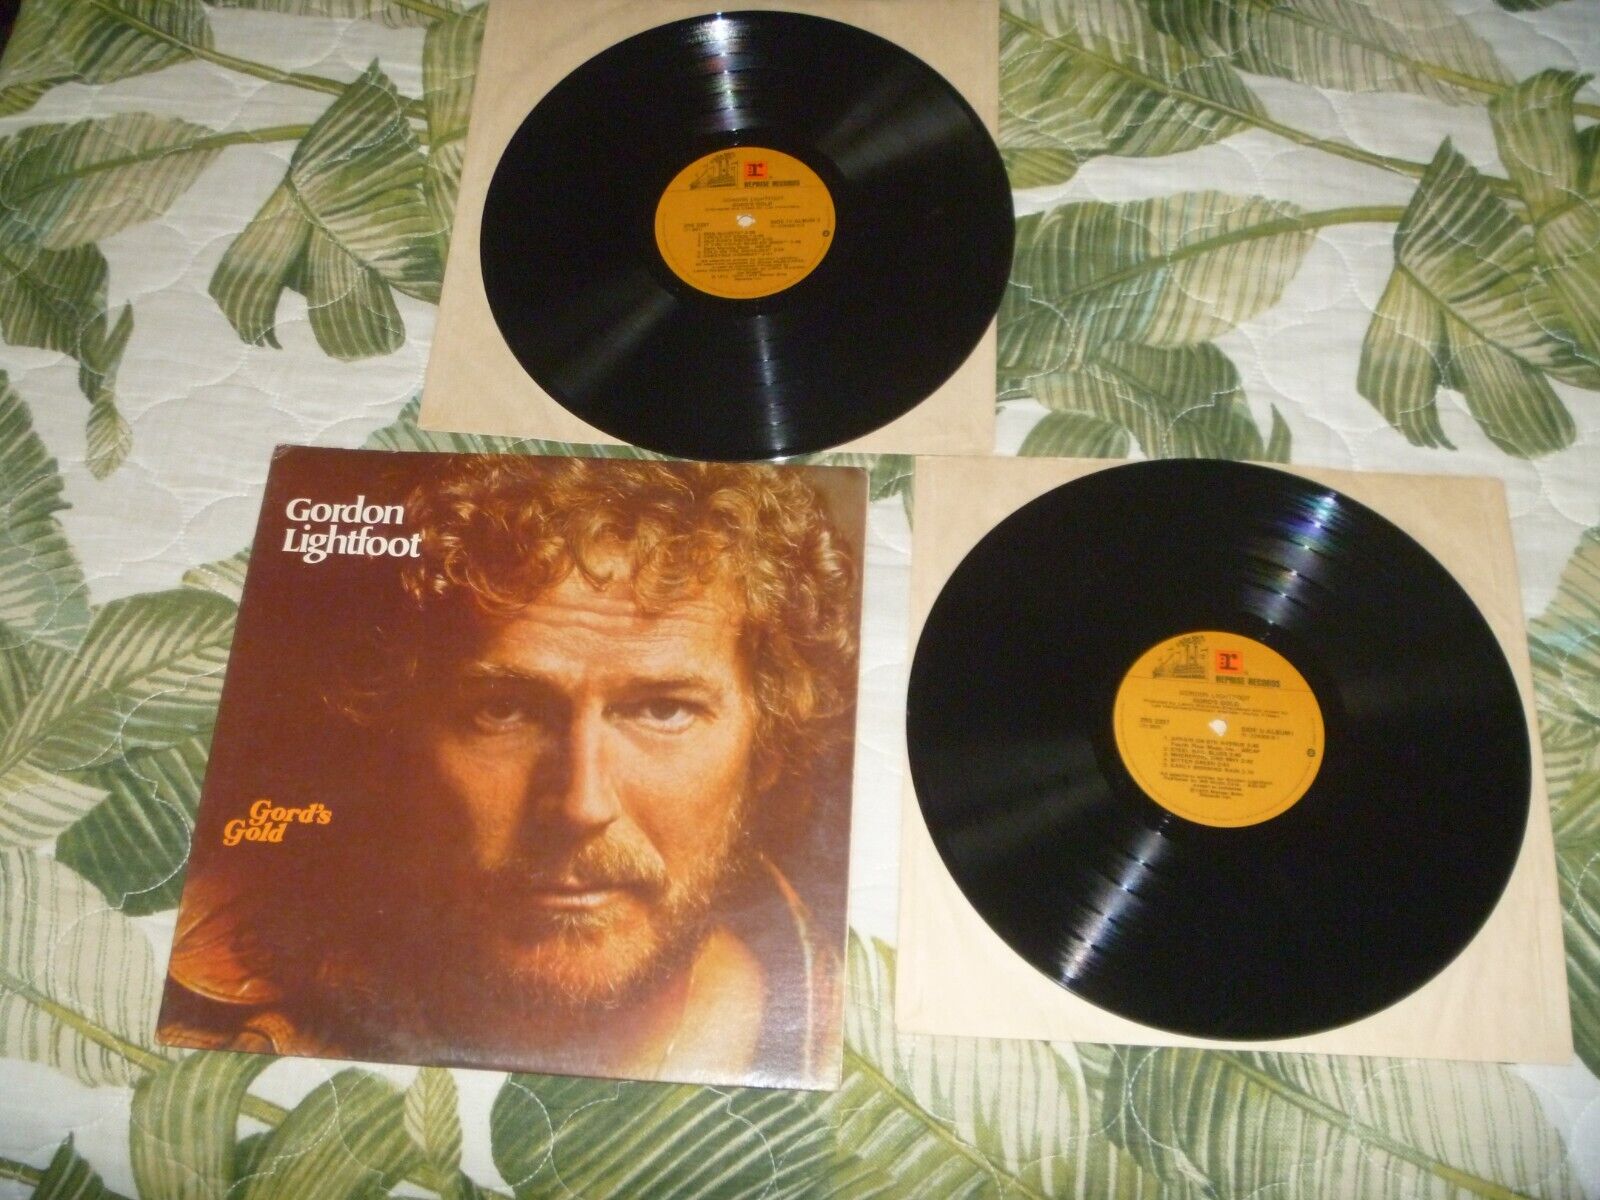 LOT VINYL LP ALBUM 70s ROCK GORDON LIGHTFOOT GORD'S GOLD VG++ BEST OF GATEFOLD